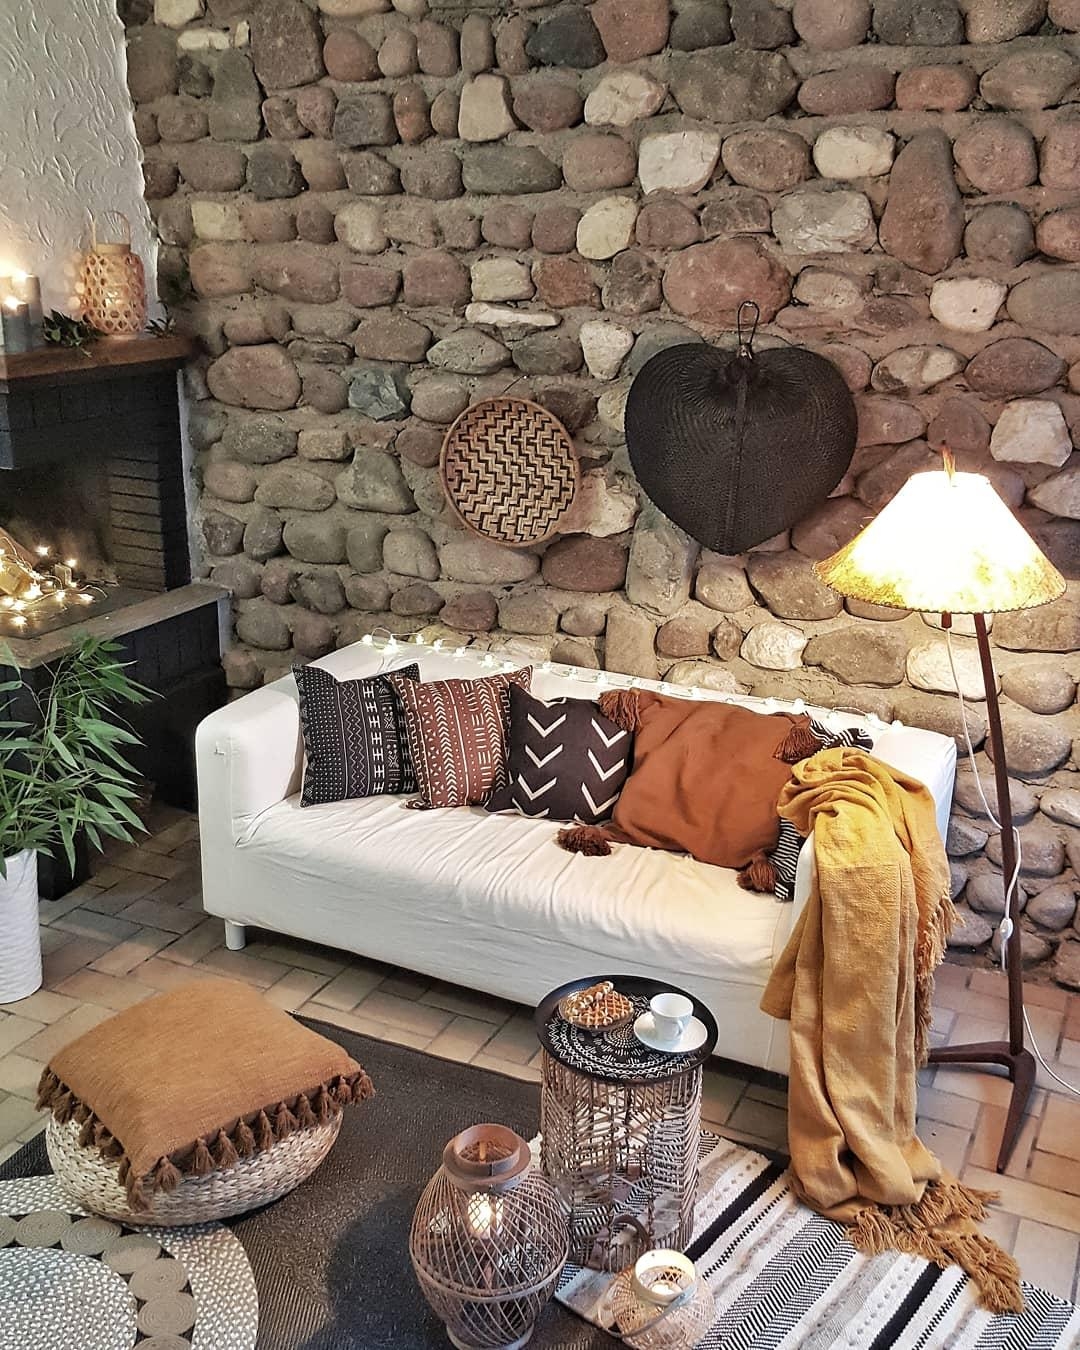 #wohnzimmer #interior #vintage #couchliebt #deko #hygge #boho